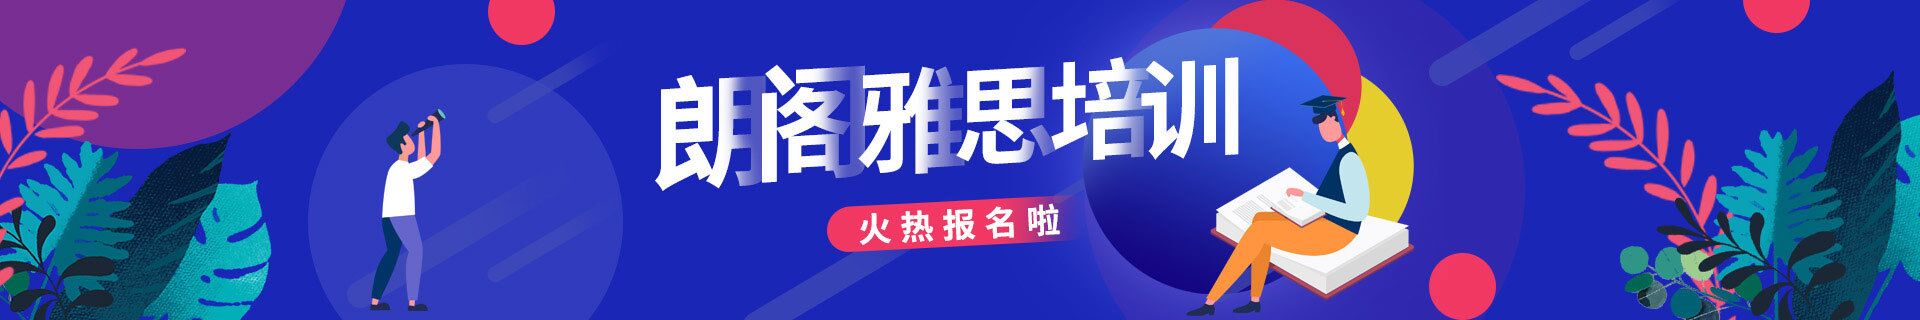 上海徐家汇三立精选教育培训机构